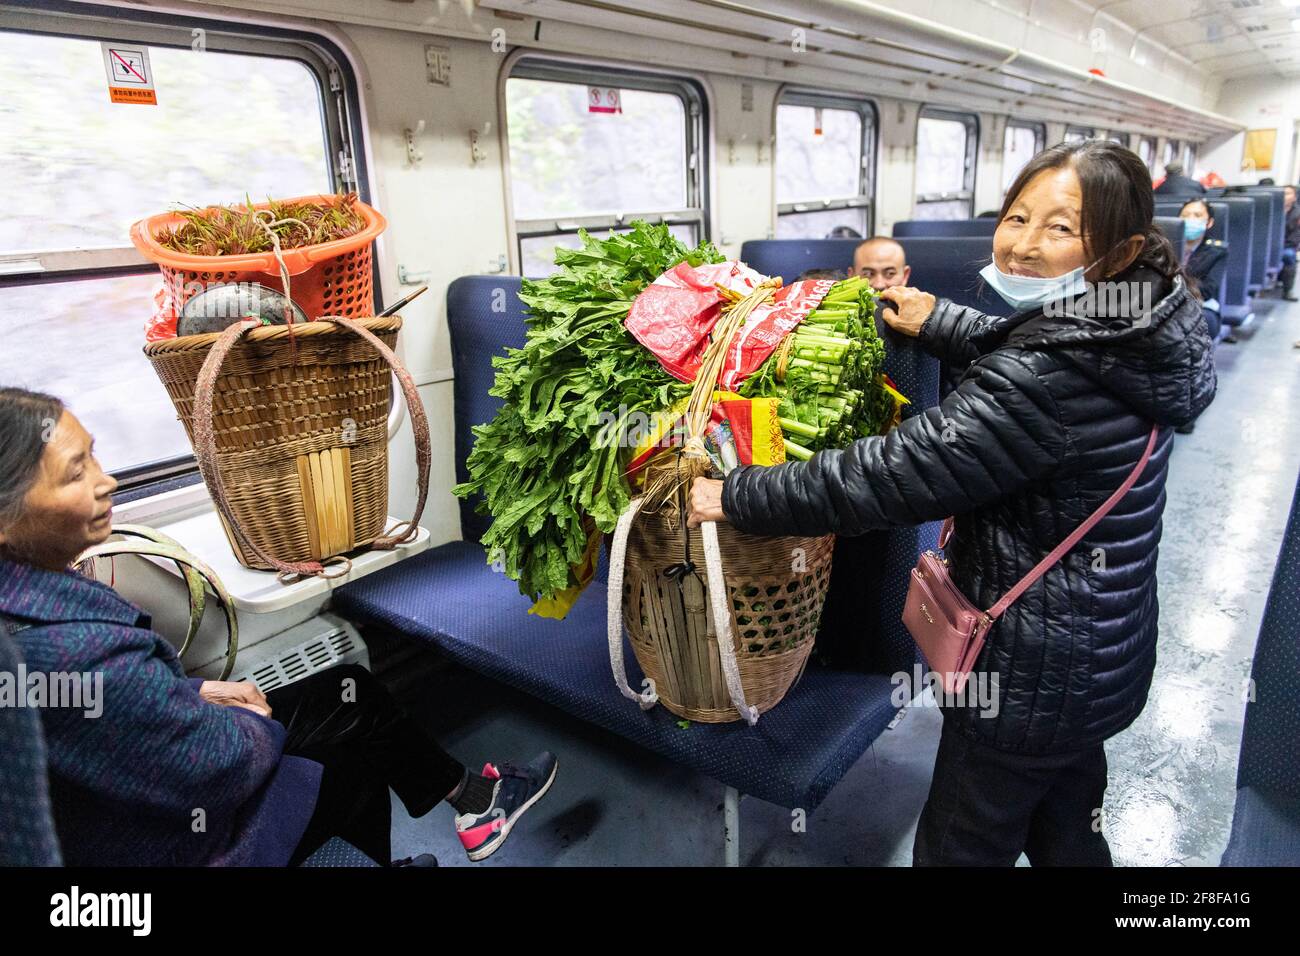 (210414) -- CHANGSHA, 14 aprile 2021 (Xinhua) -- UN passeggero tiene verdure fresche sul treno 7266 nella provincia di Hunan della Cina centrale, 11 aprile 2021. I treni 7265/7266/7267 iniziarono a funzionare nel 1995, estendendosi per più di 300 chilometri dalla stazione di Huaihua alla stazione di Lixian. I treni passano 37 fermate lungo la strada in 9 ore e 16 minuti. I prezzi dei biglietti variano da 1 yuan a 23.5 yuan (circa 0.15-3.59 dollari USA), che non sono stati aumentati in 26 anni. I treni attraversano le montagne di Wuling. Grazie a loro, gli abitanti del villaggio non solo possono trasportare frutta, verdura e altre loca Foto Stock